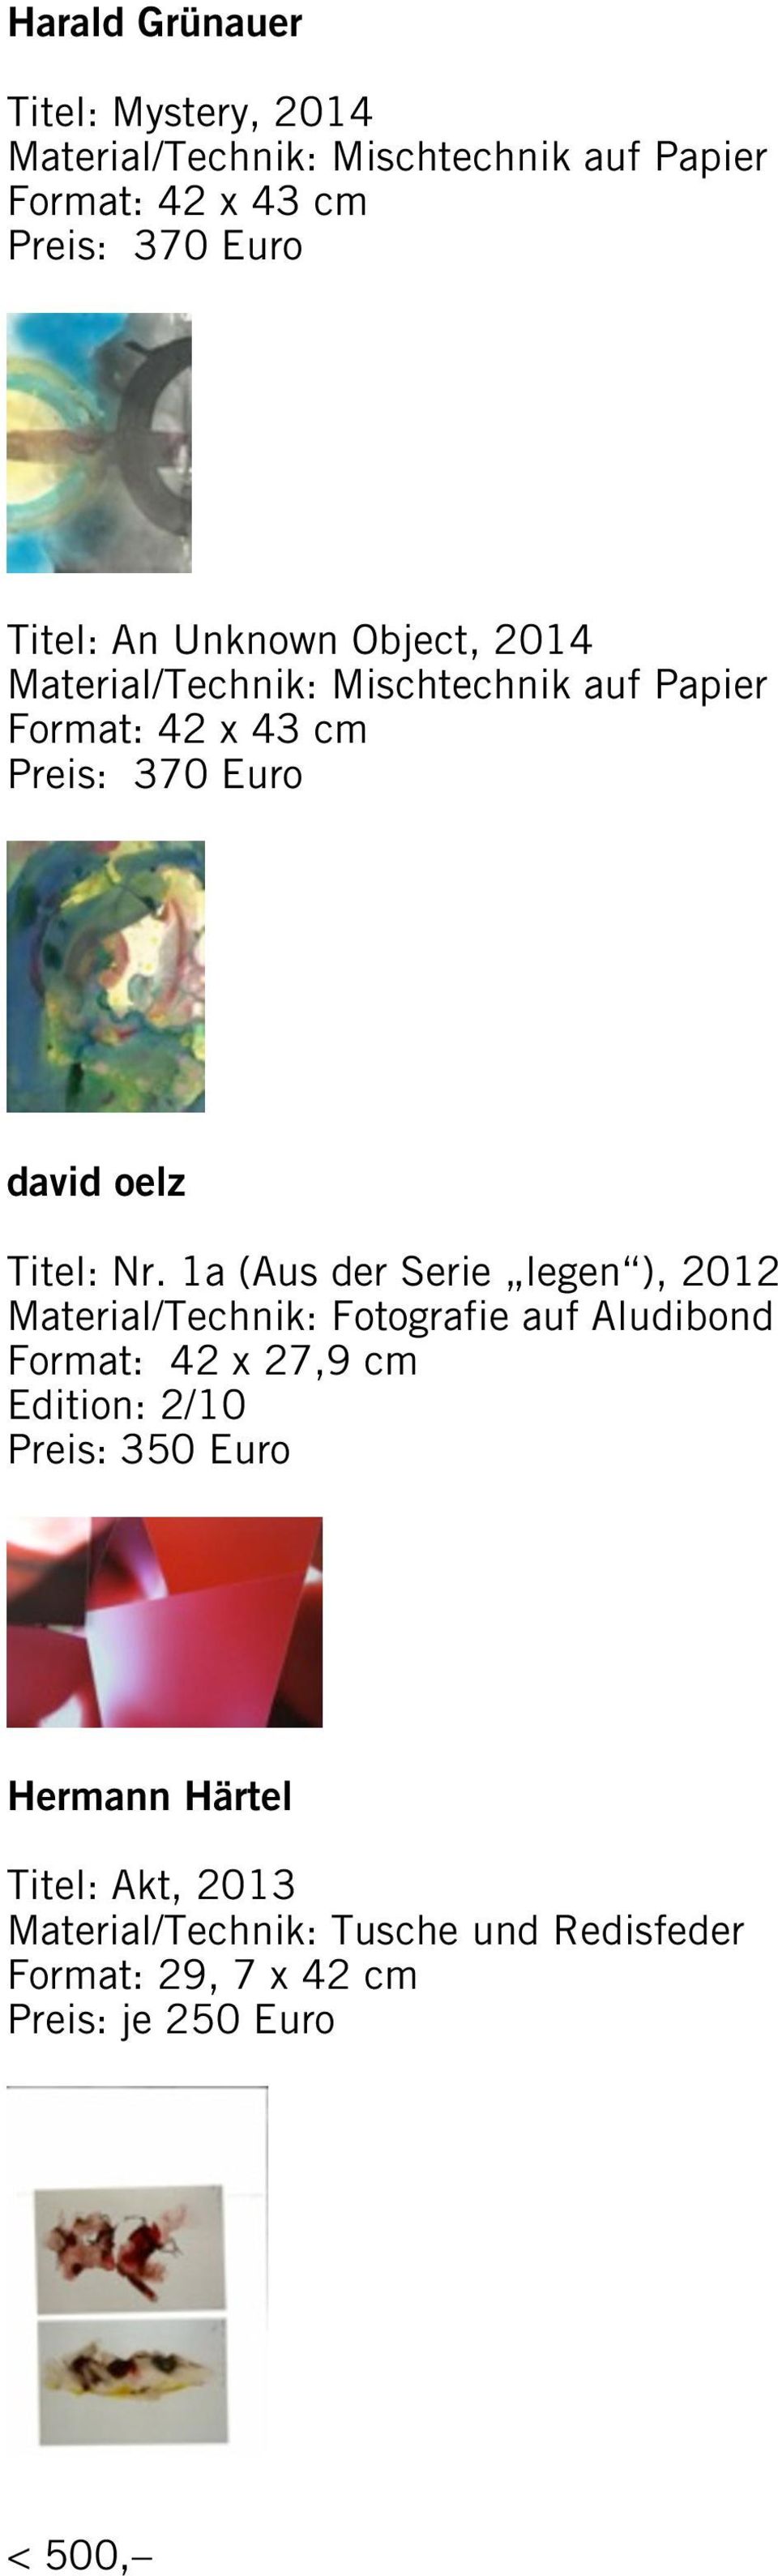 1a (Aus der Serie legen ), 2012 Material/Technik: Fotografie auf Aludibond Format: 42 x 27,9 cm Edition: 2/10 Preis: 350